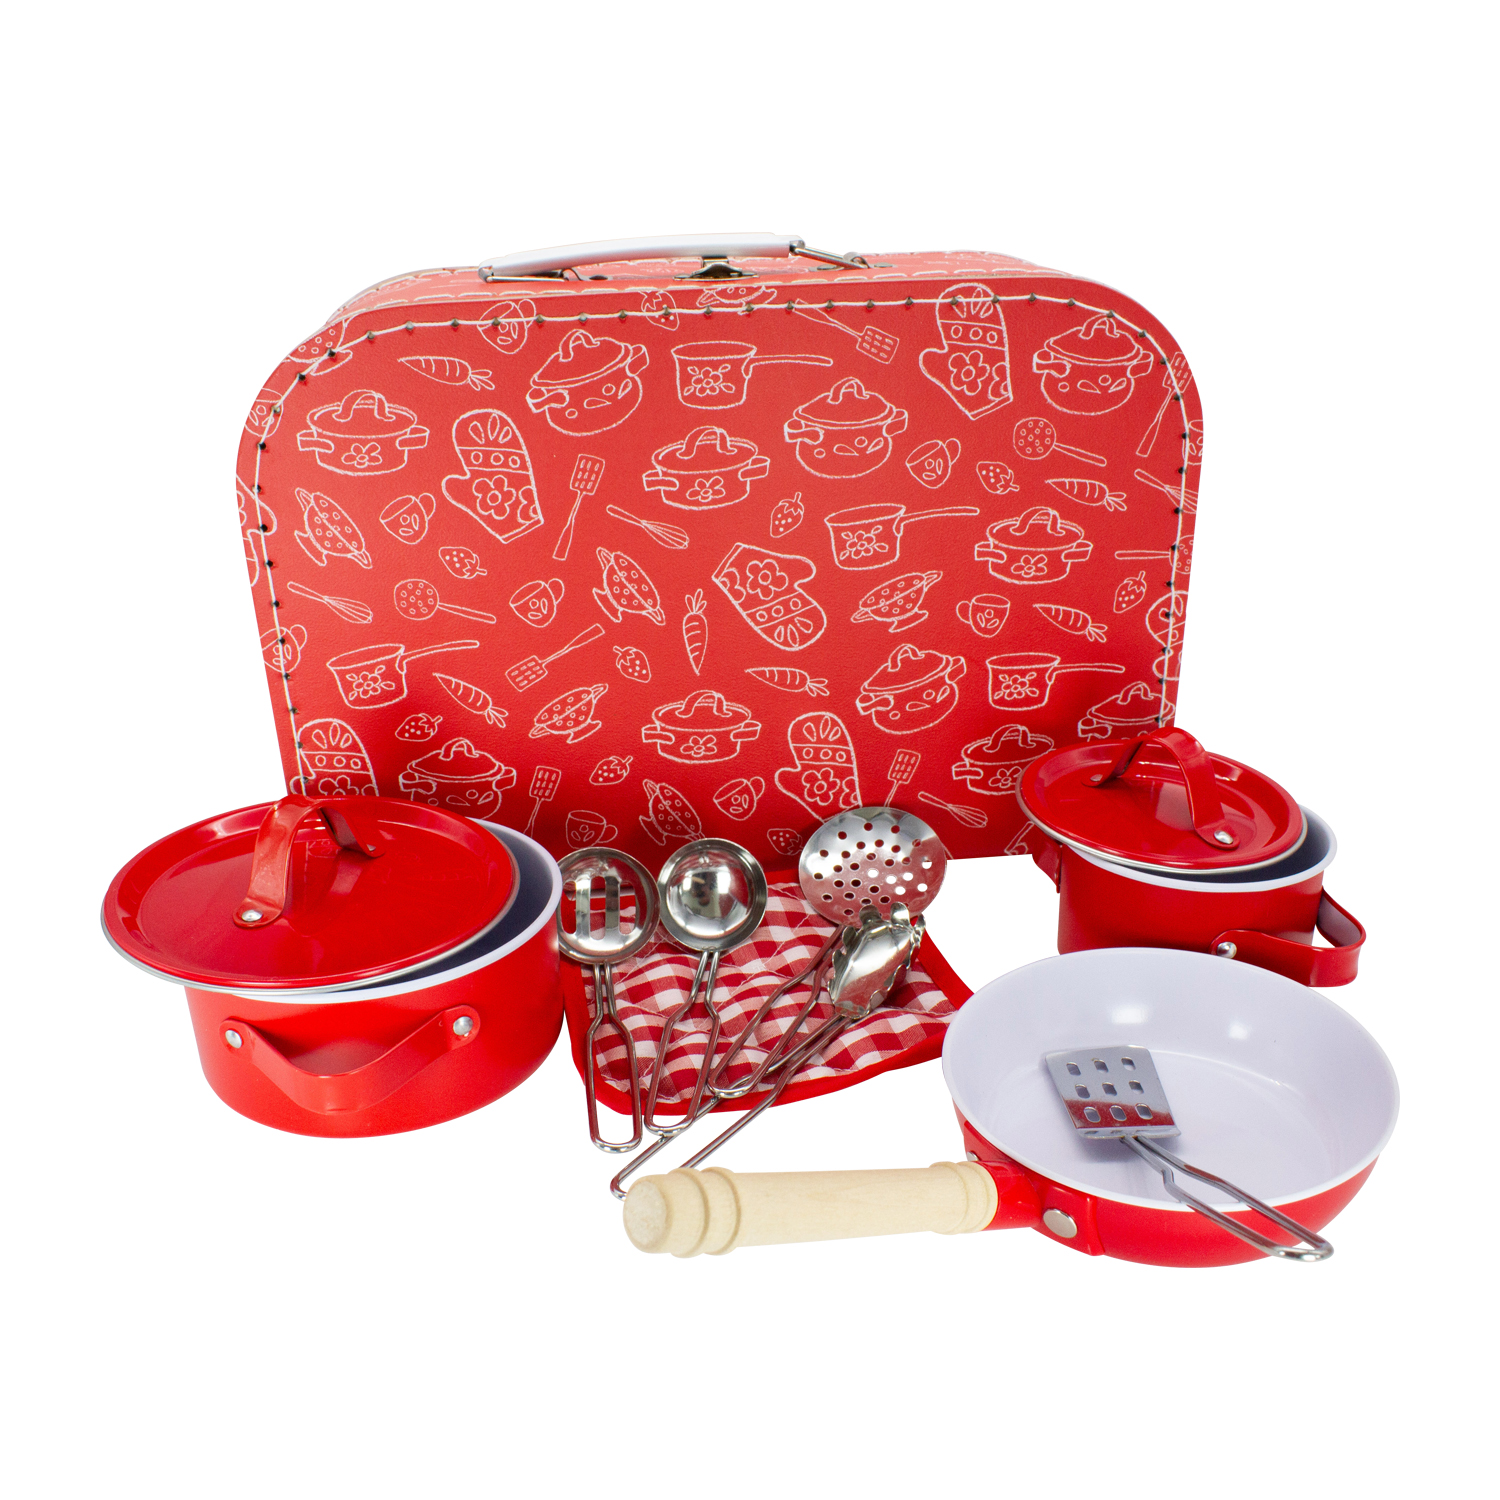 Spielkoffer Kochset rot für Kinder im Tragekoffer mit Töpfen, Pfanne, Topflappen, Metallgeschirr 37833